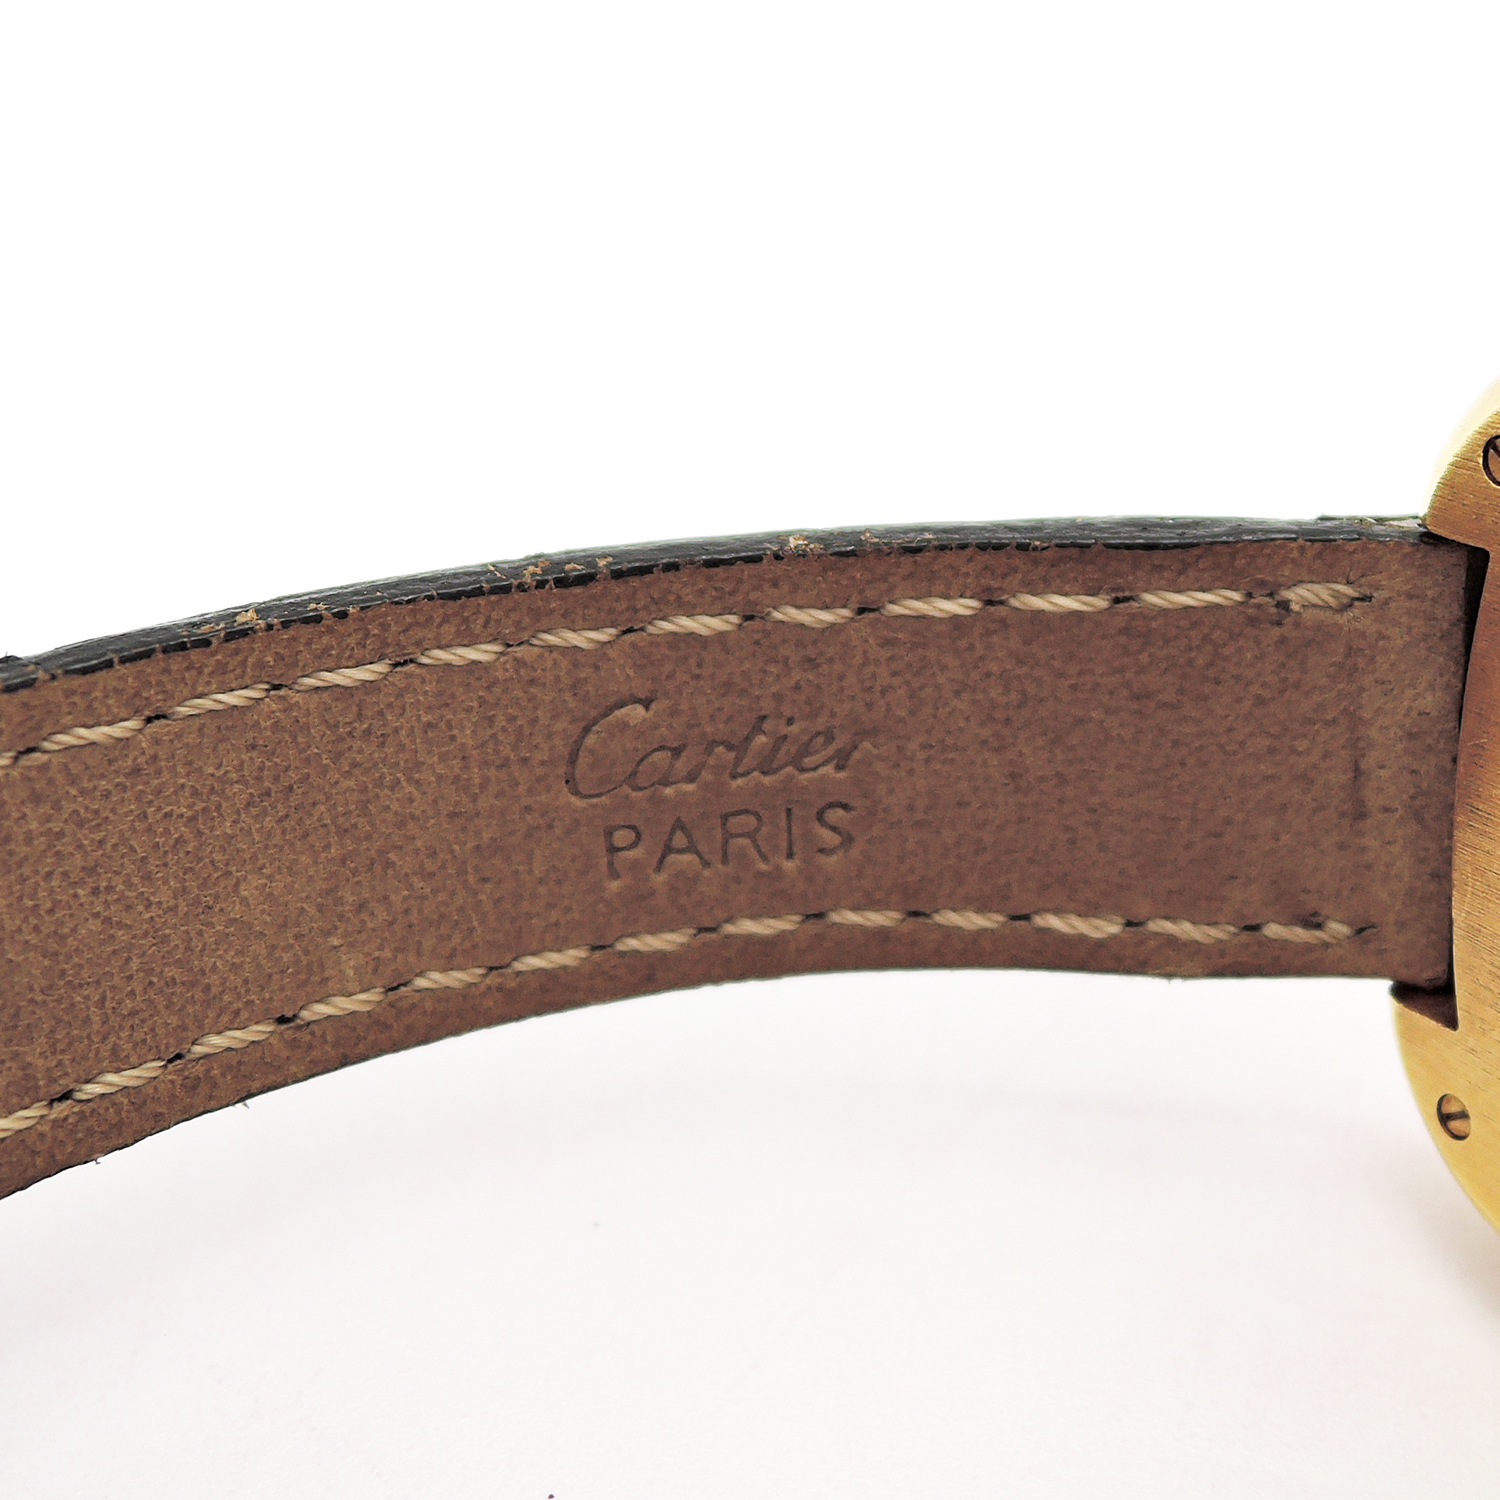 カルティエ ゴンドーロ 文字盤ホワイト HW 17.5cm YG レザー アンティーク 時計 レディース Cariter Gondole CR000090のイメージ画像